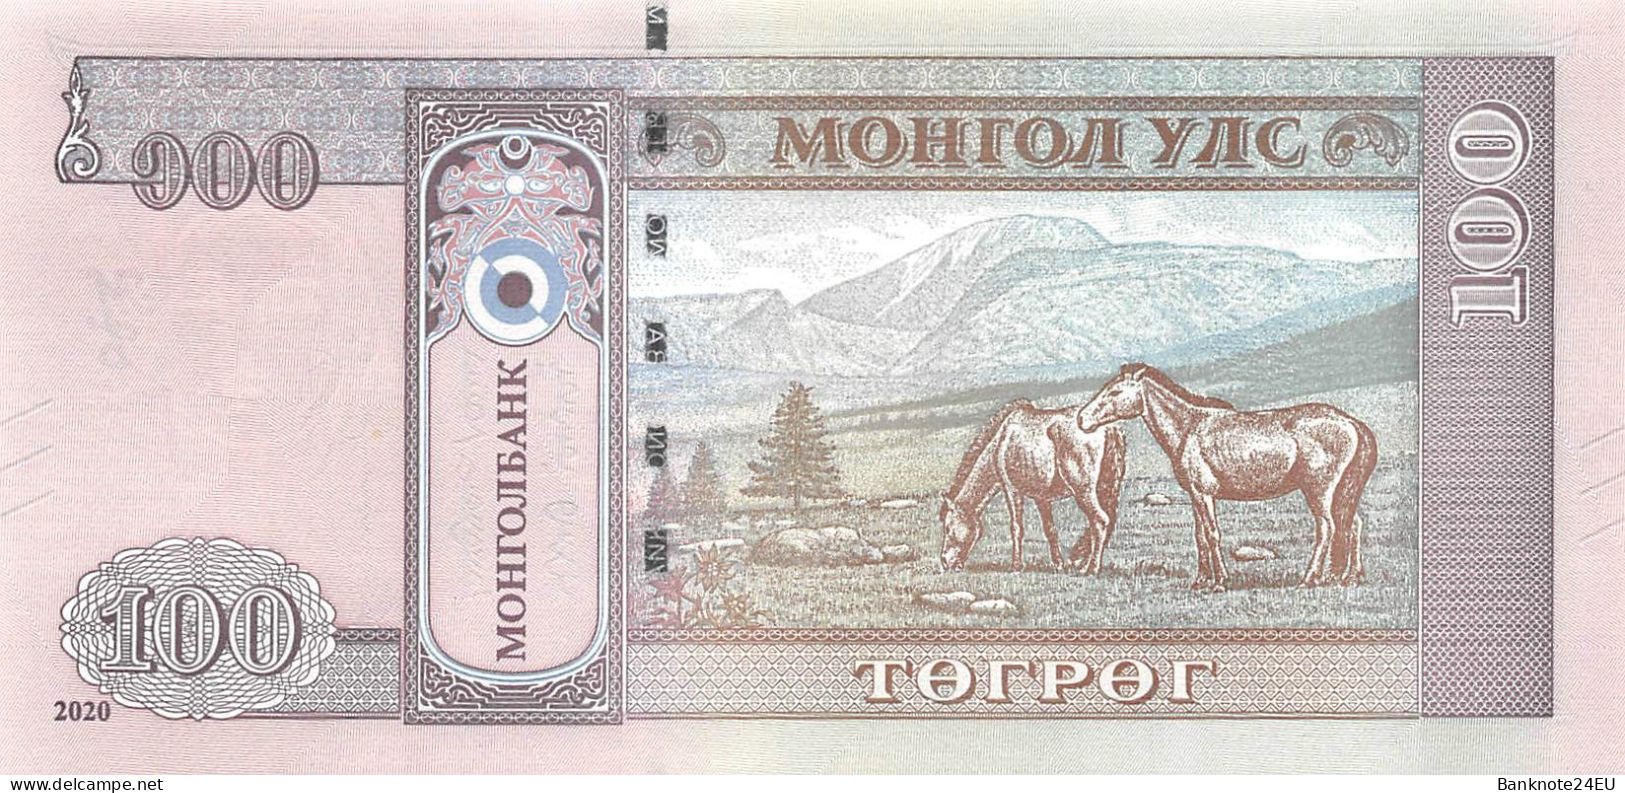 Mongolia 100 Togrog 2020 Unc Pn 73a - Mongolei